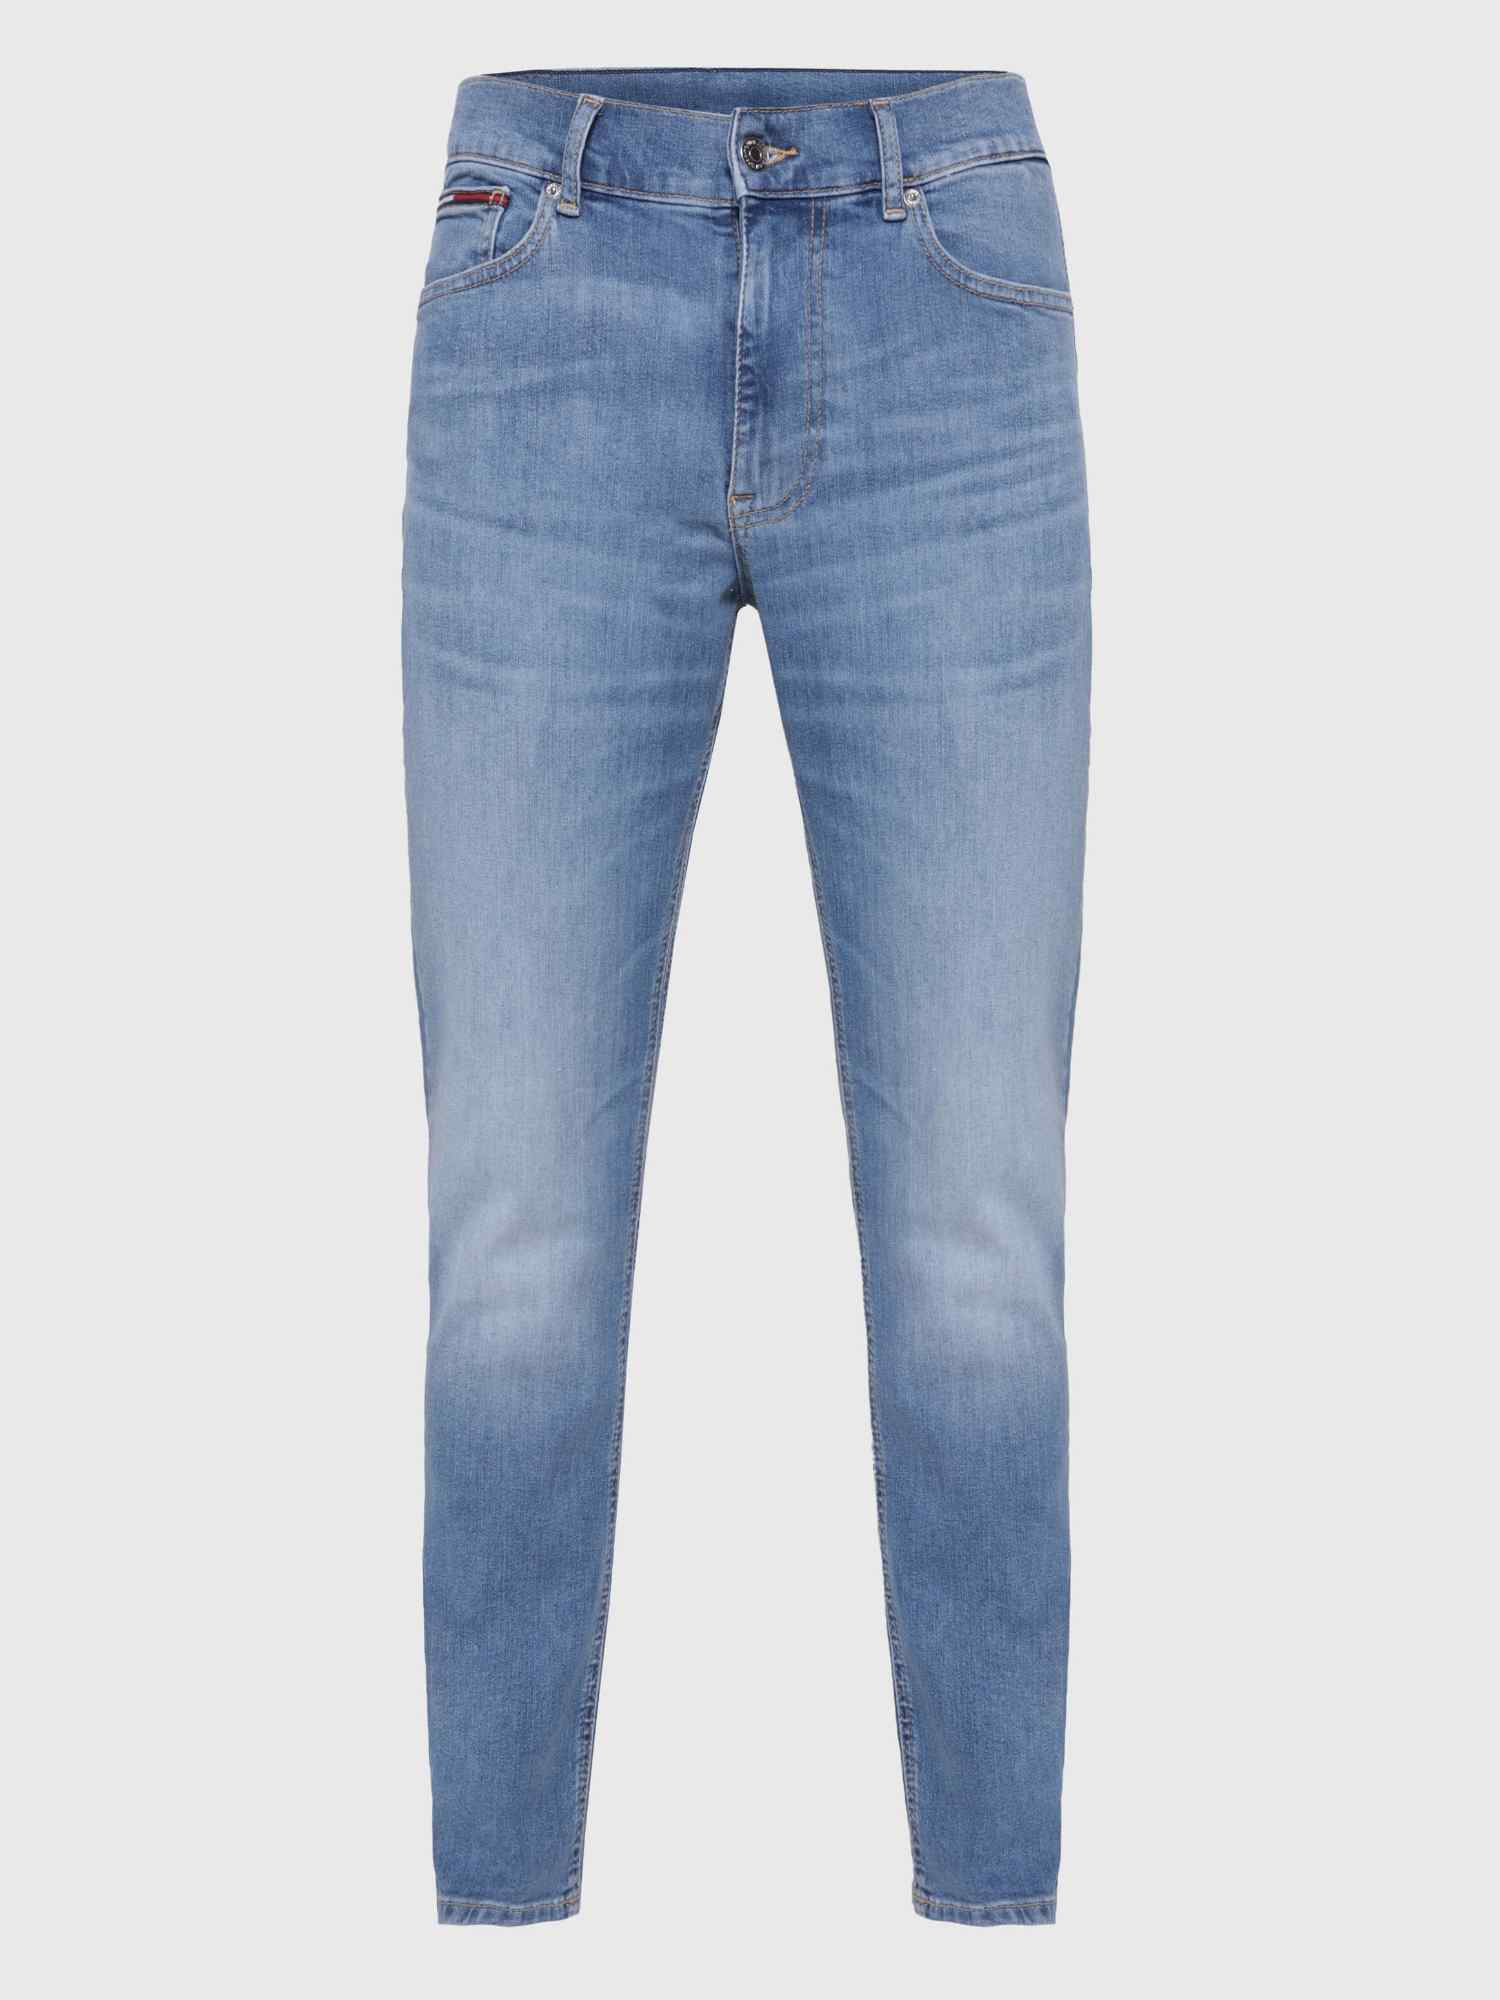 Jeans skinny con logo en bolsillo de hombre Tommy